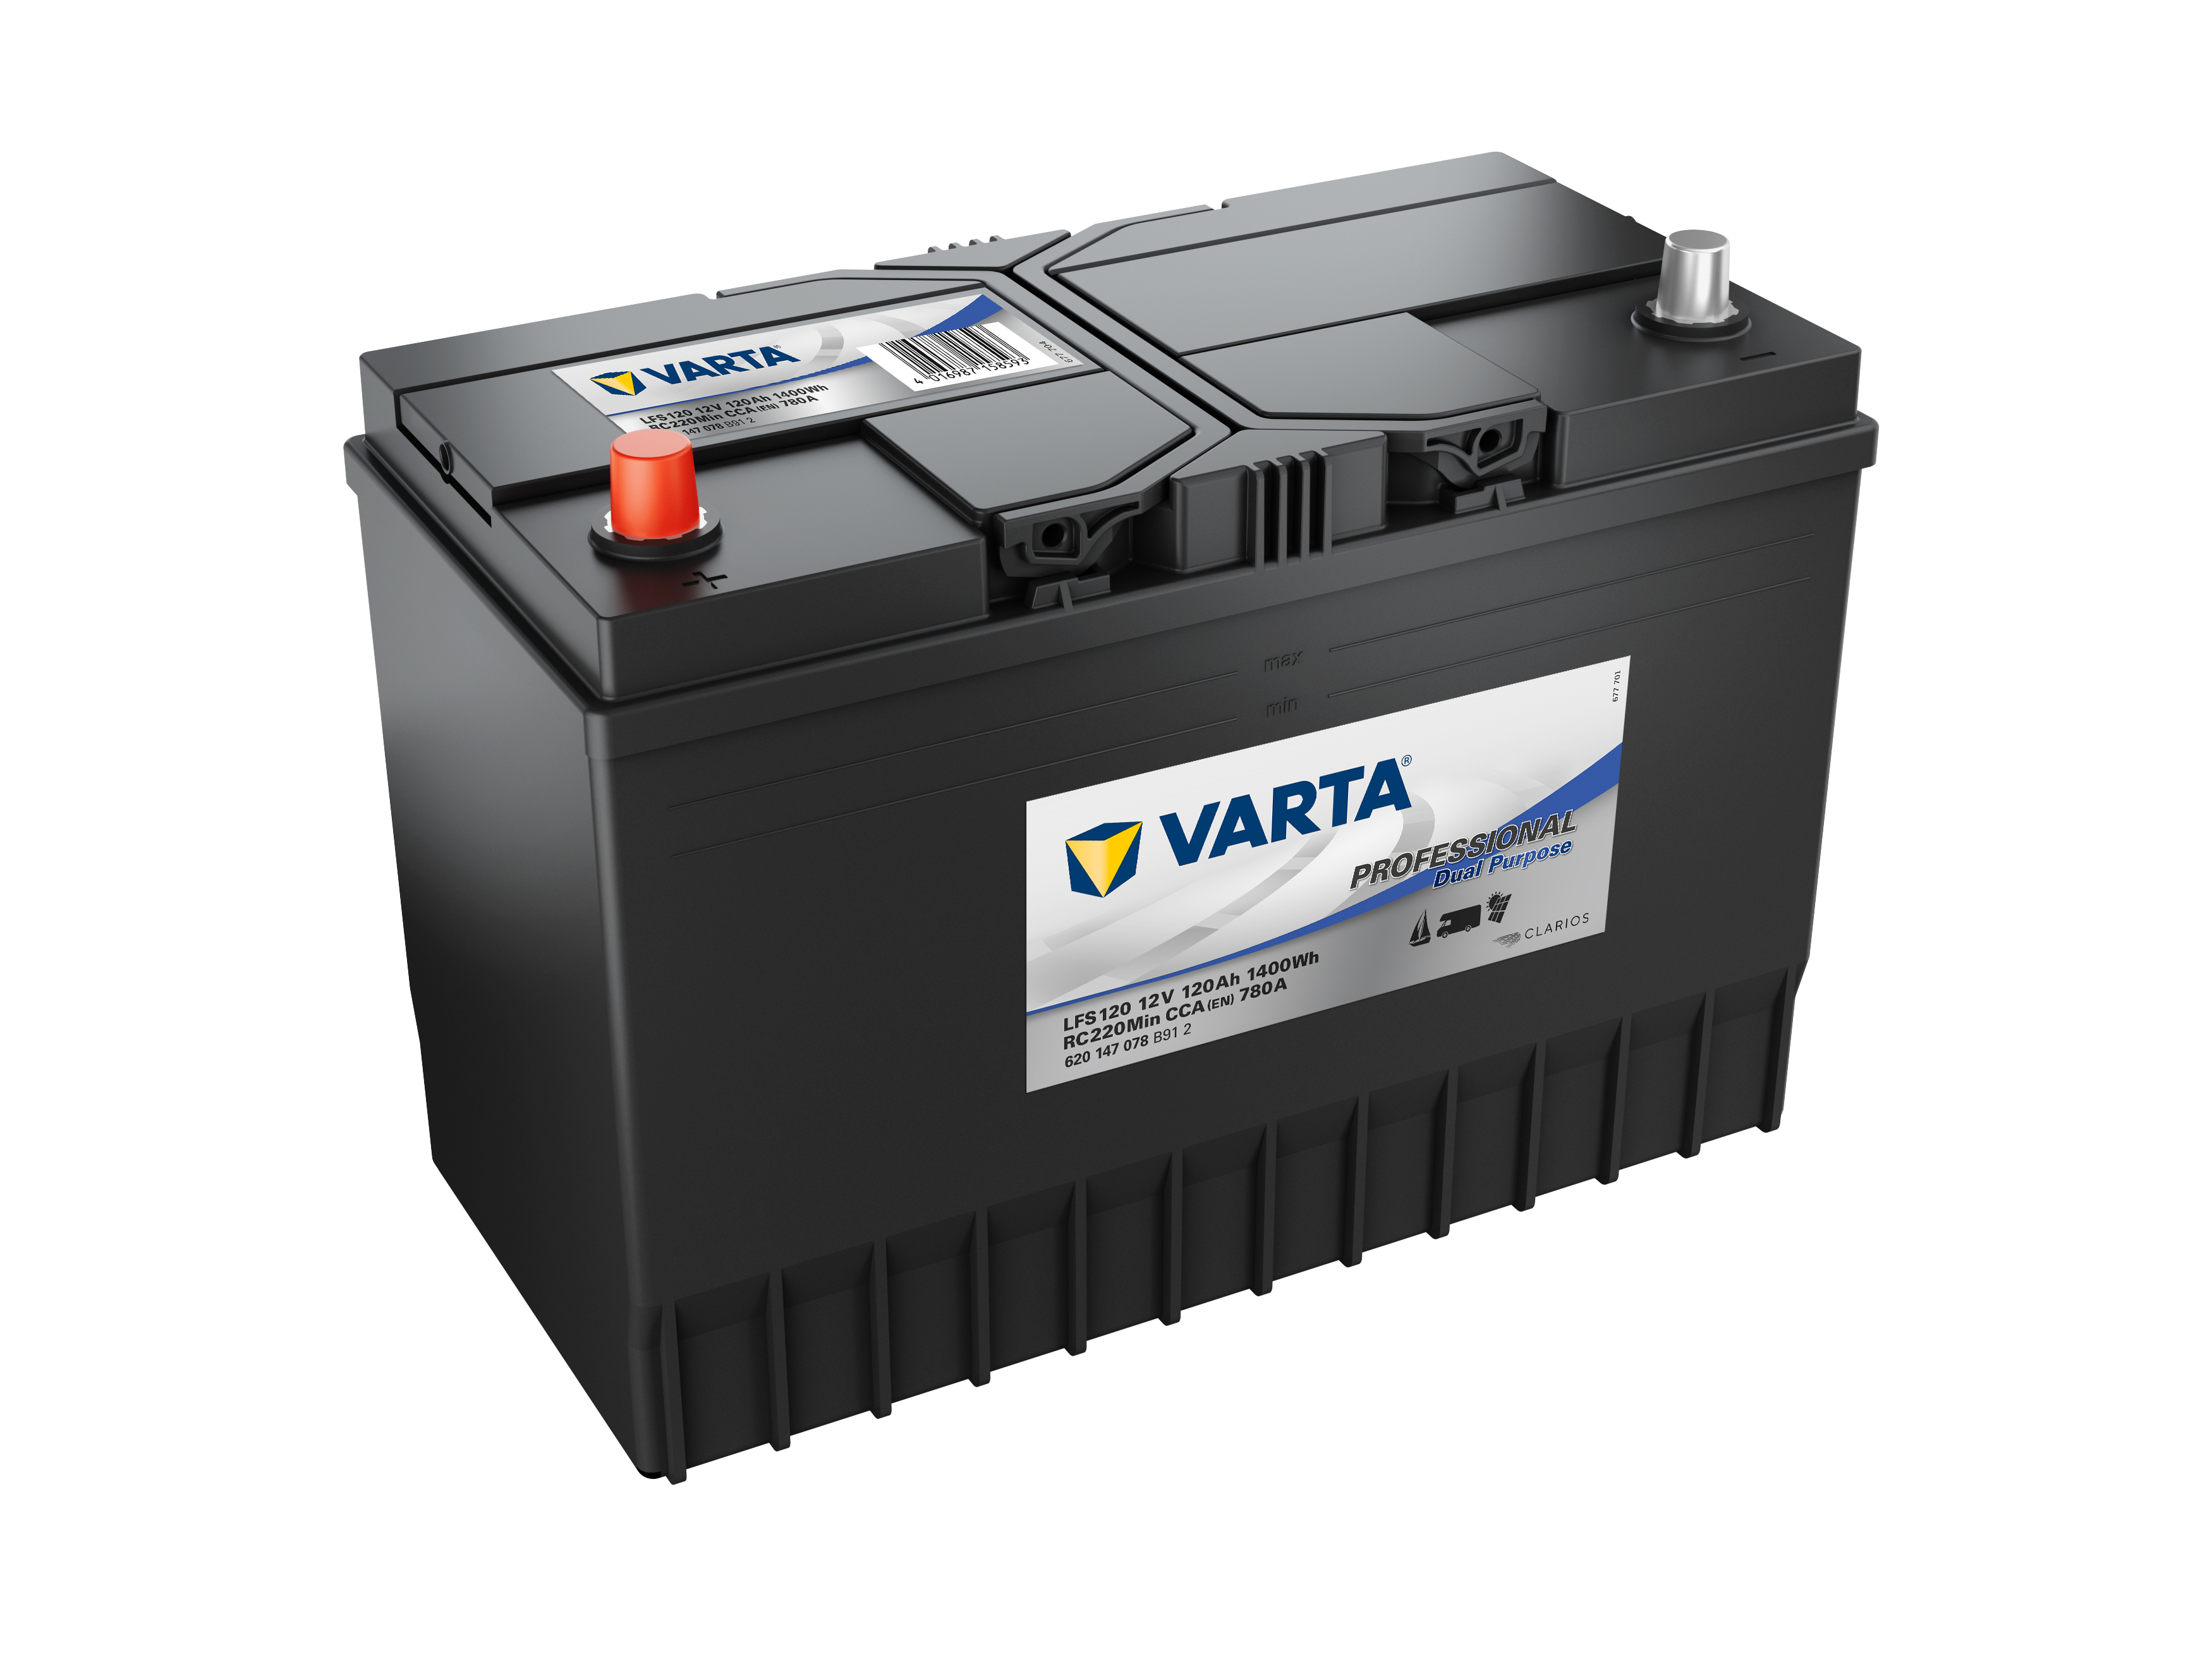 Varta LA95 - 12V - 95AH - 850A (EN), 260,00 €